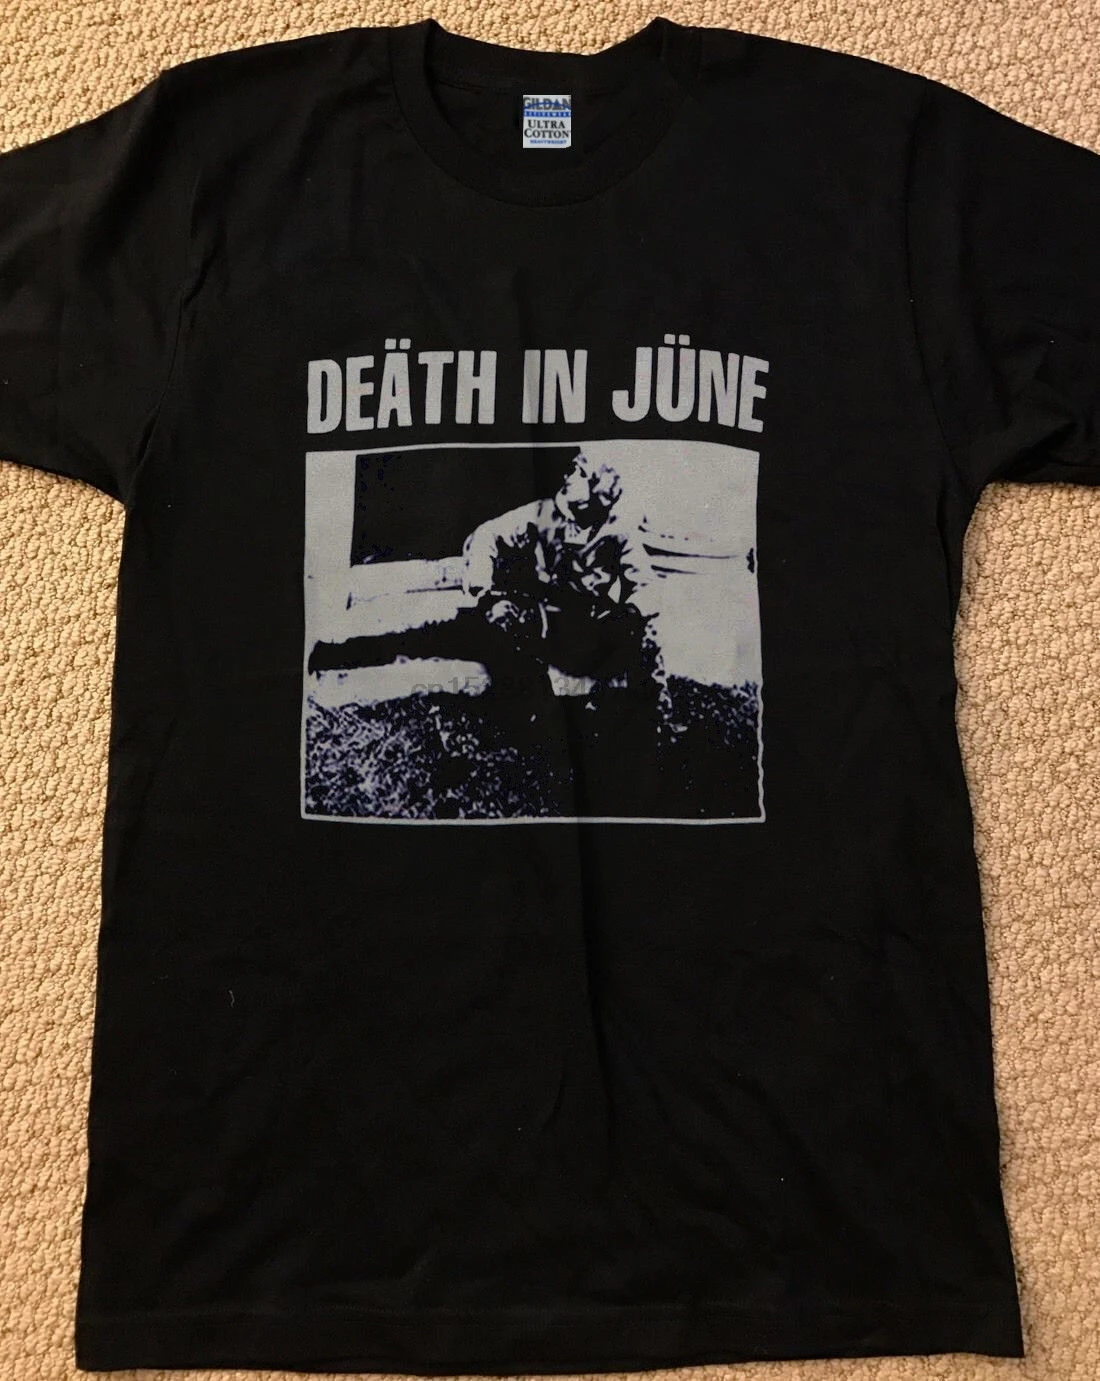 

Death In June Shirt Vintage T Shirt Black Tee Shirt Neofolk Reprint Size S Xxl Mens T Shirt Summer O Neck 100%Cotton Men Short